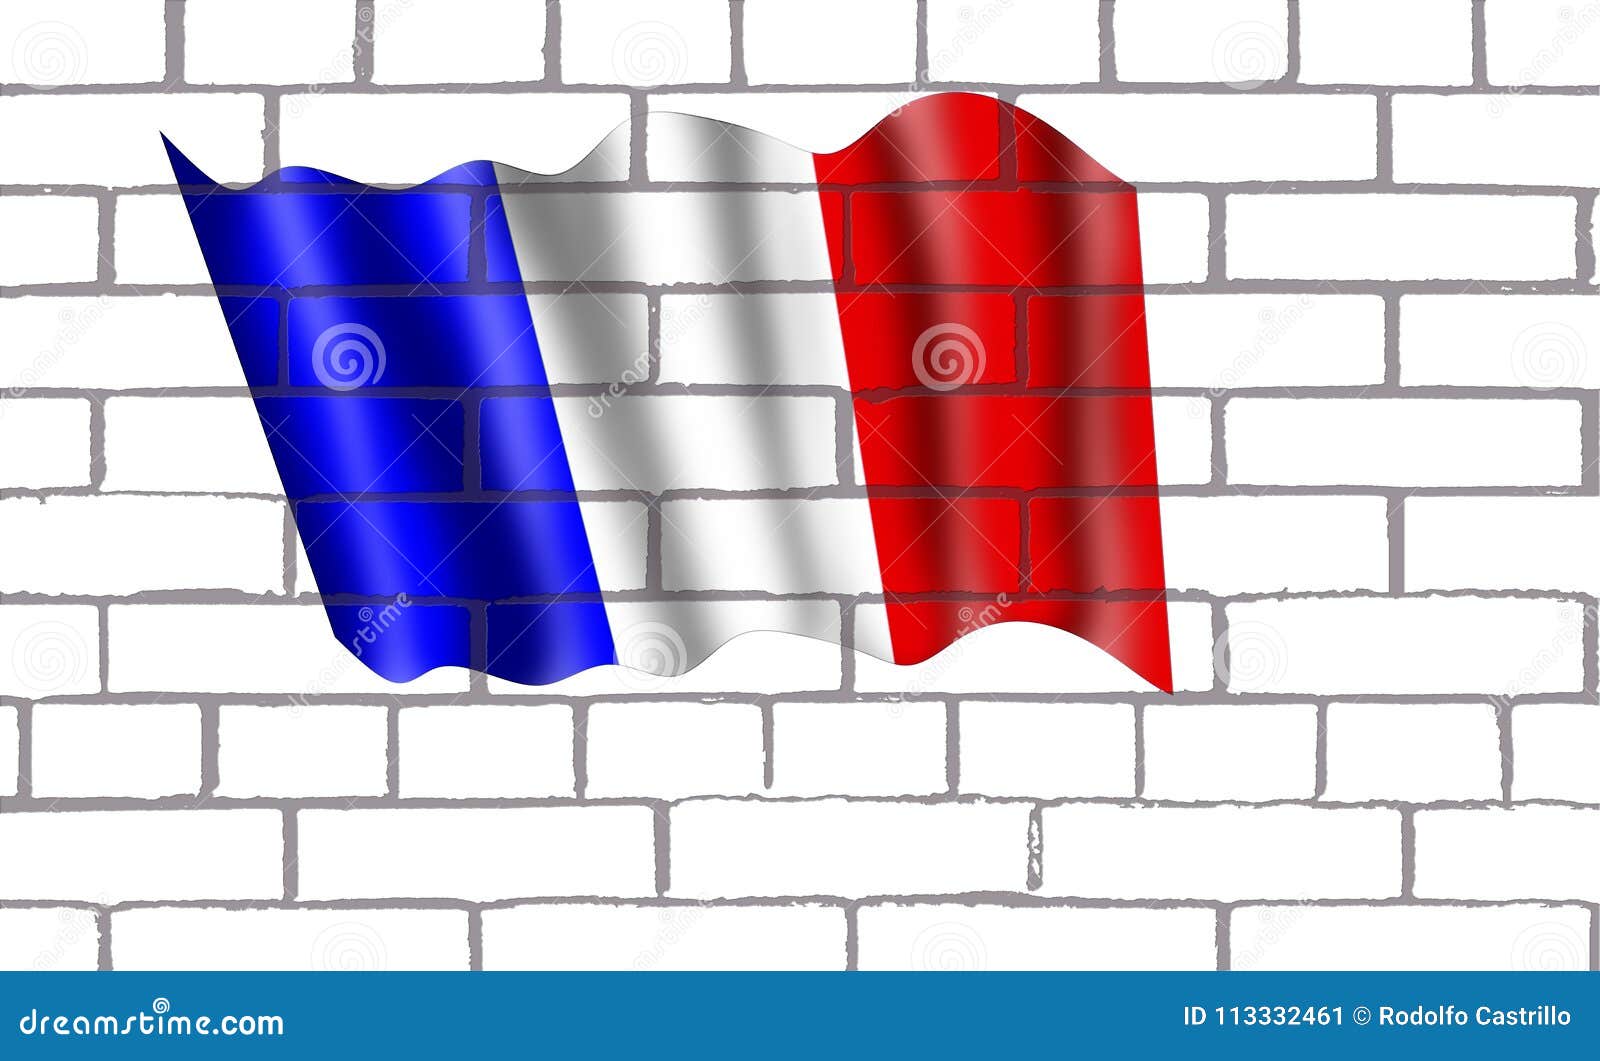 bendera francia en pared de labrillos